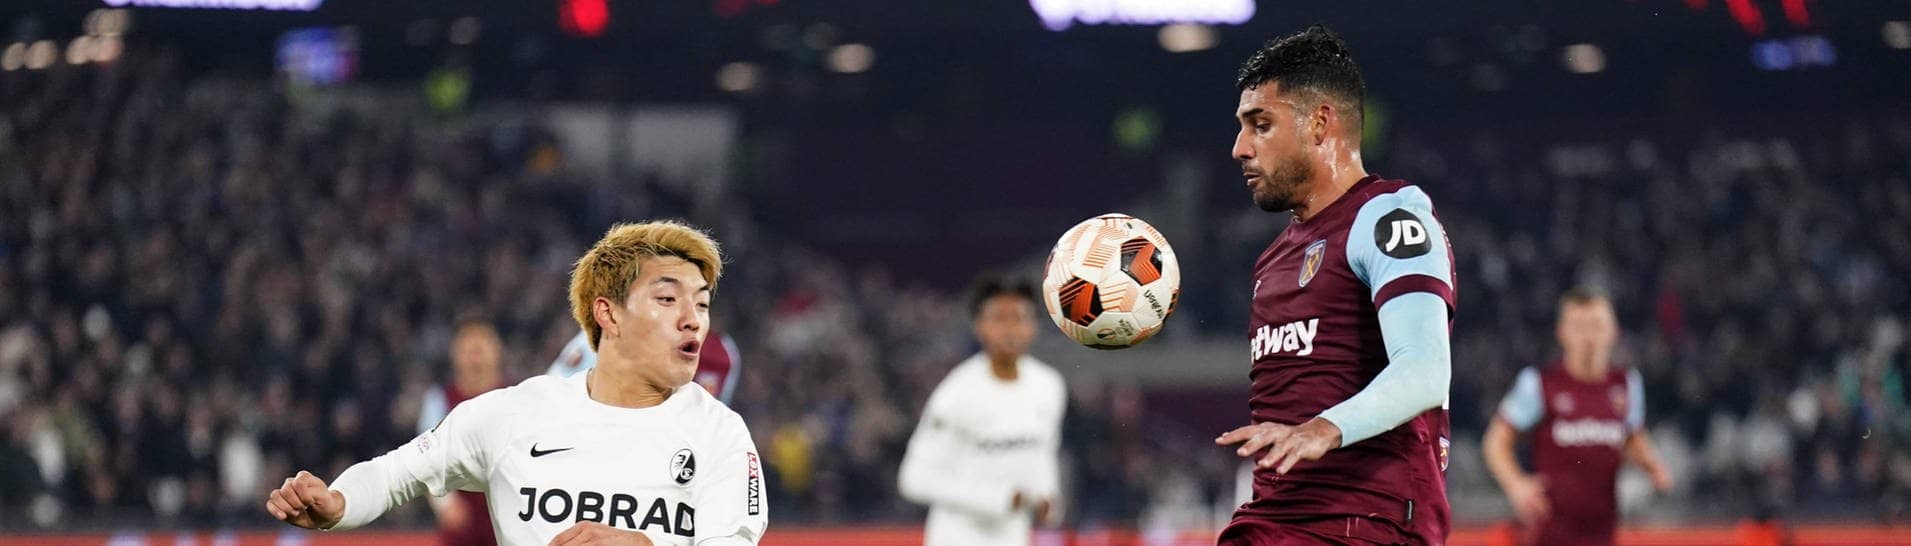 Freiburgs Ritsu Doan (links) and West Ham Uniteds Emerson Palmieri kämpfen um den Ball (Foto: IMAGO, IMAGO/PA Images)